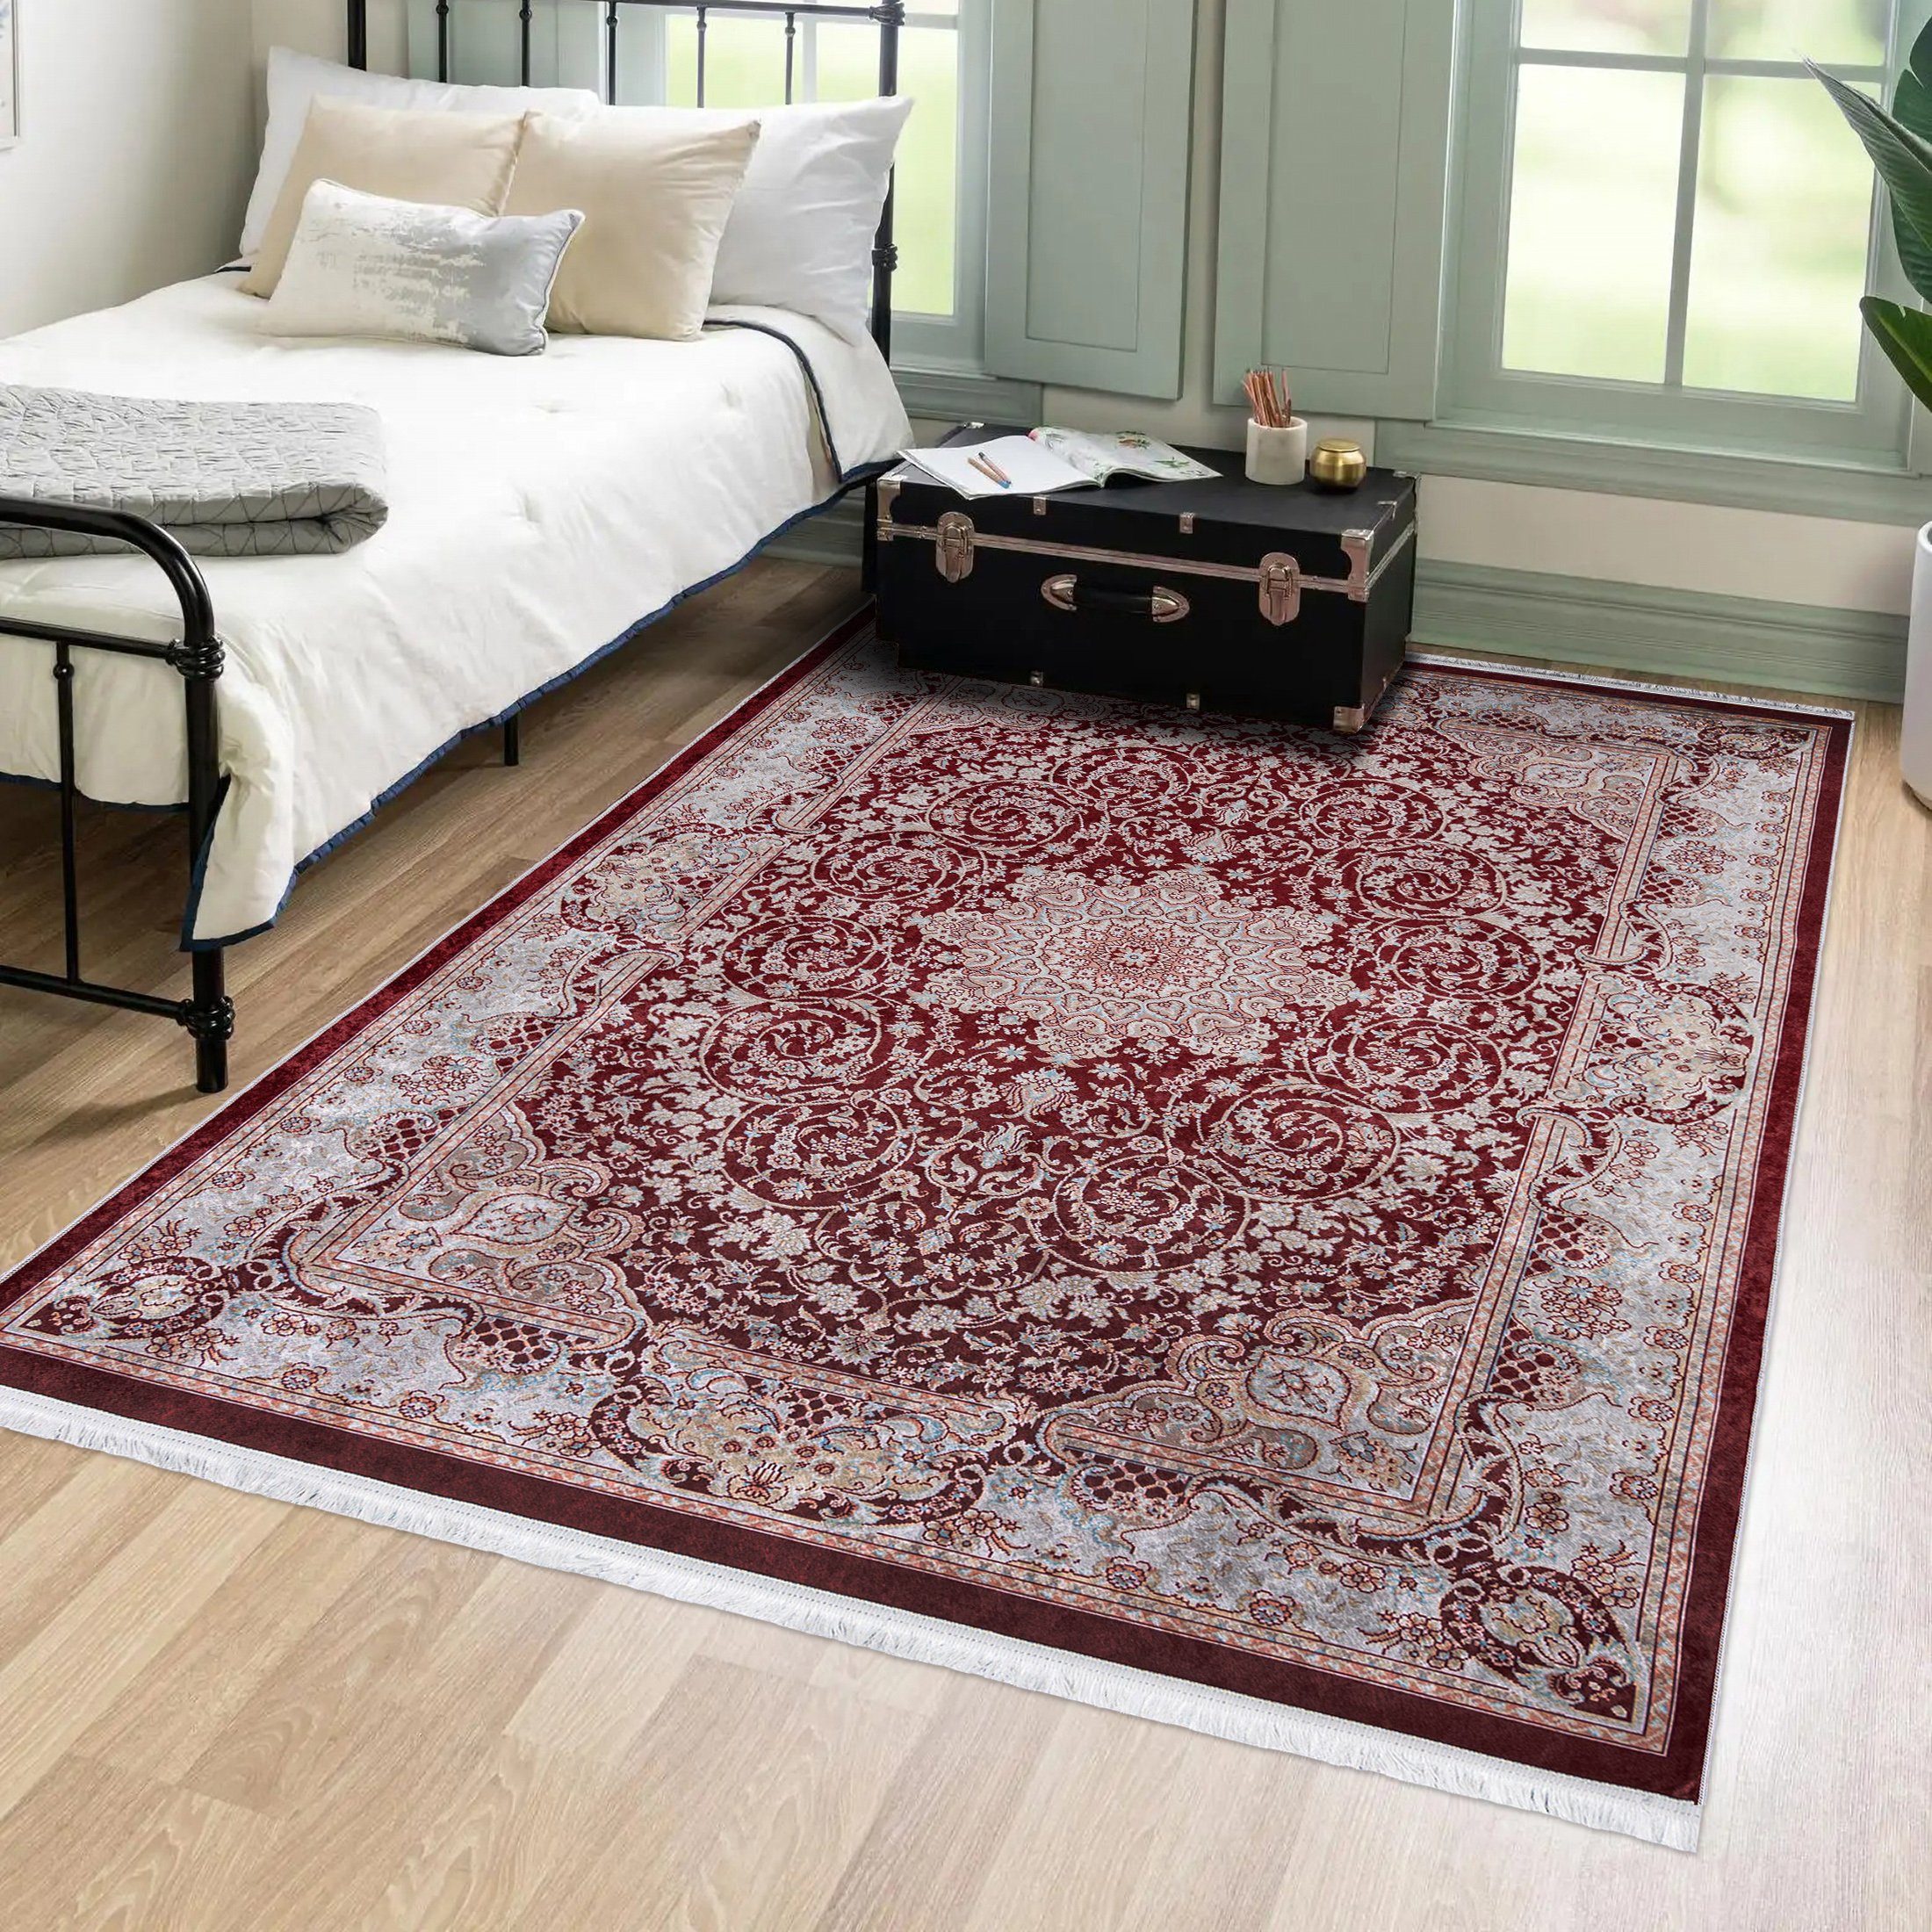 Orientteppich Orientalisch Vintage Teppich Traditioneller Orient Teppich, Mazovia, 80 x 150 cm, Kurflor, Waschbar in Waschmaschine, Höhe 5 mm, Rutschfest Rot / 42510